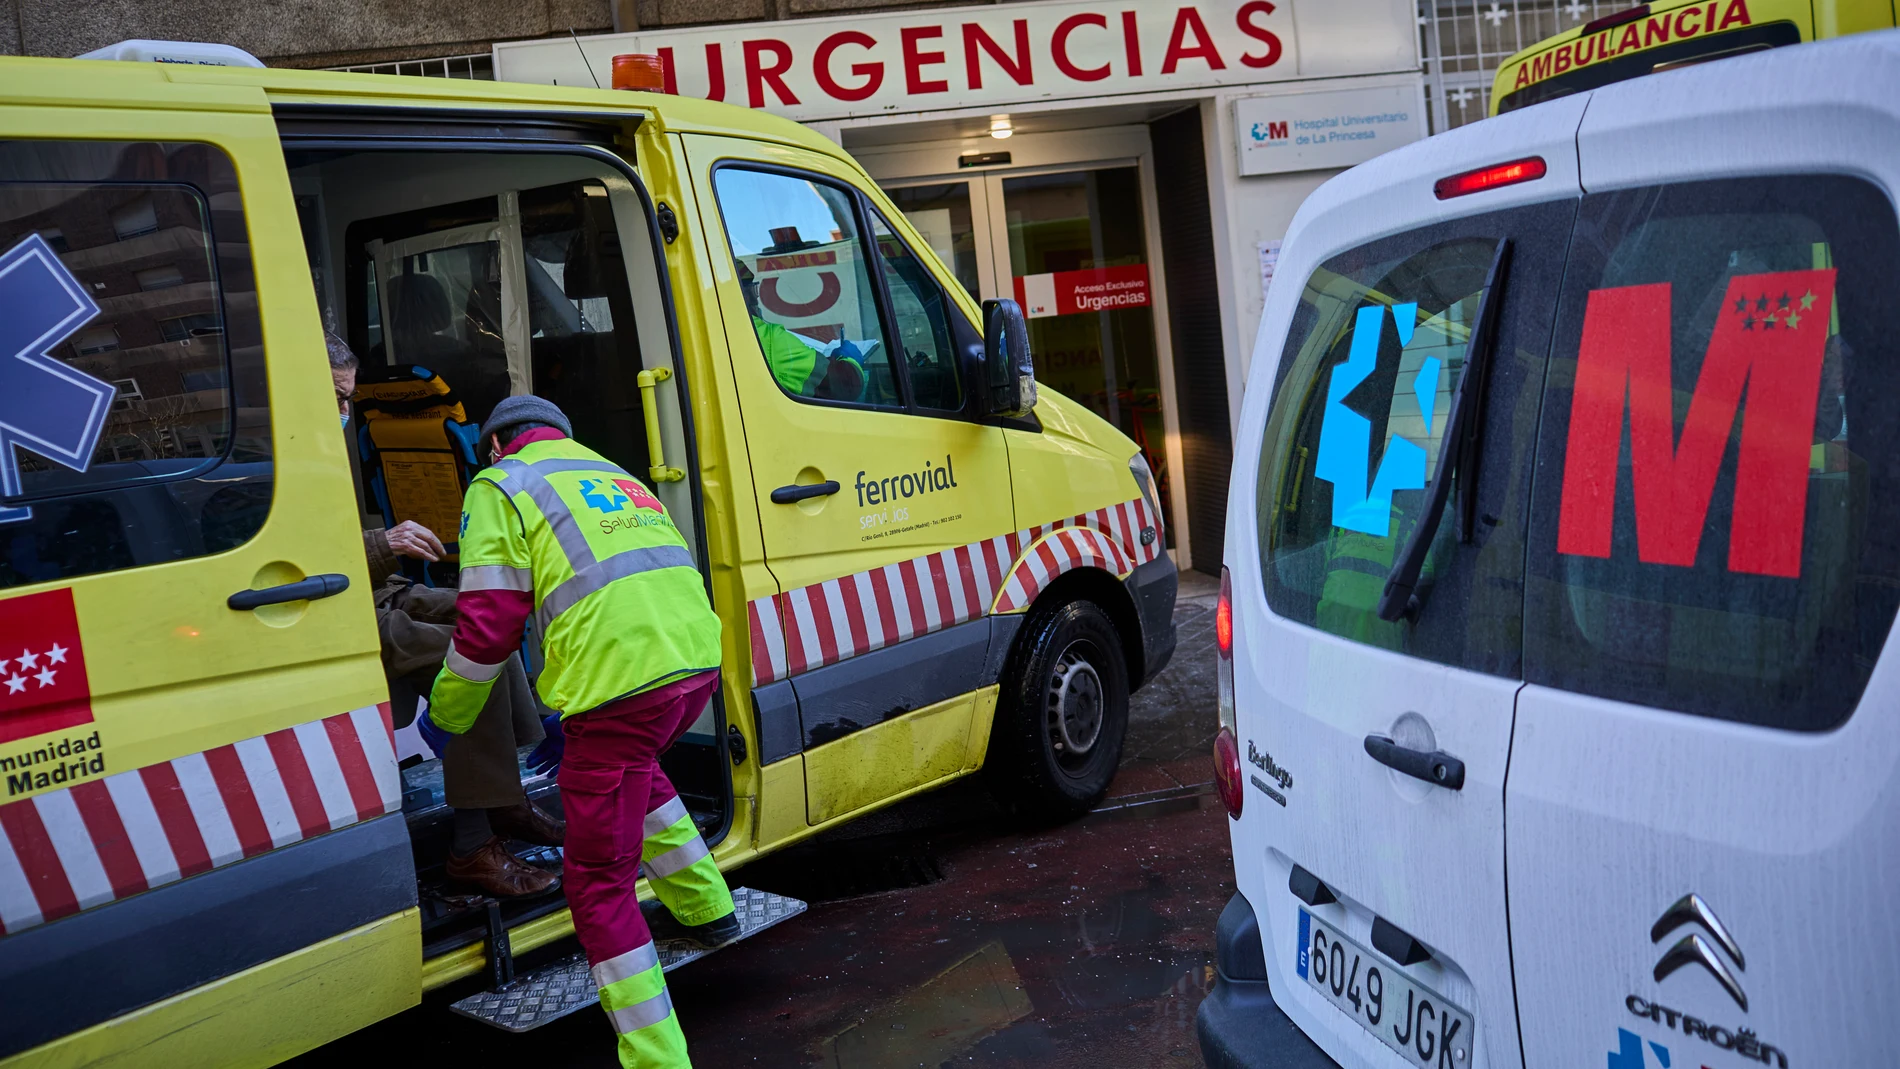 Servicio de urgencias del Hospital madrileño de La Princesa